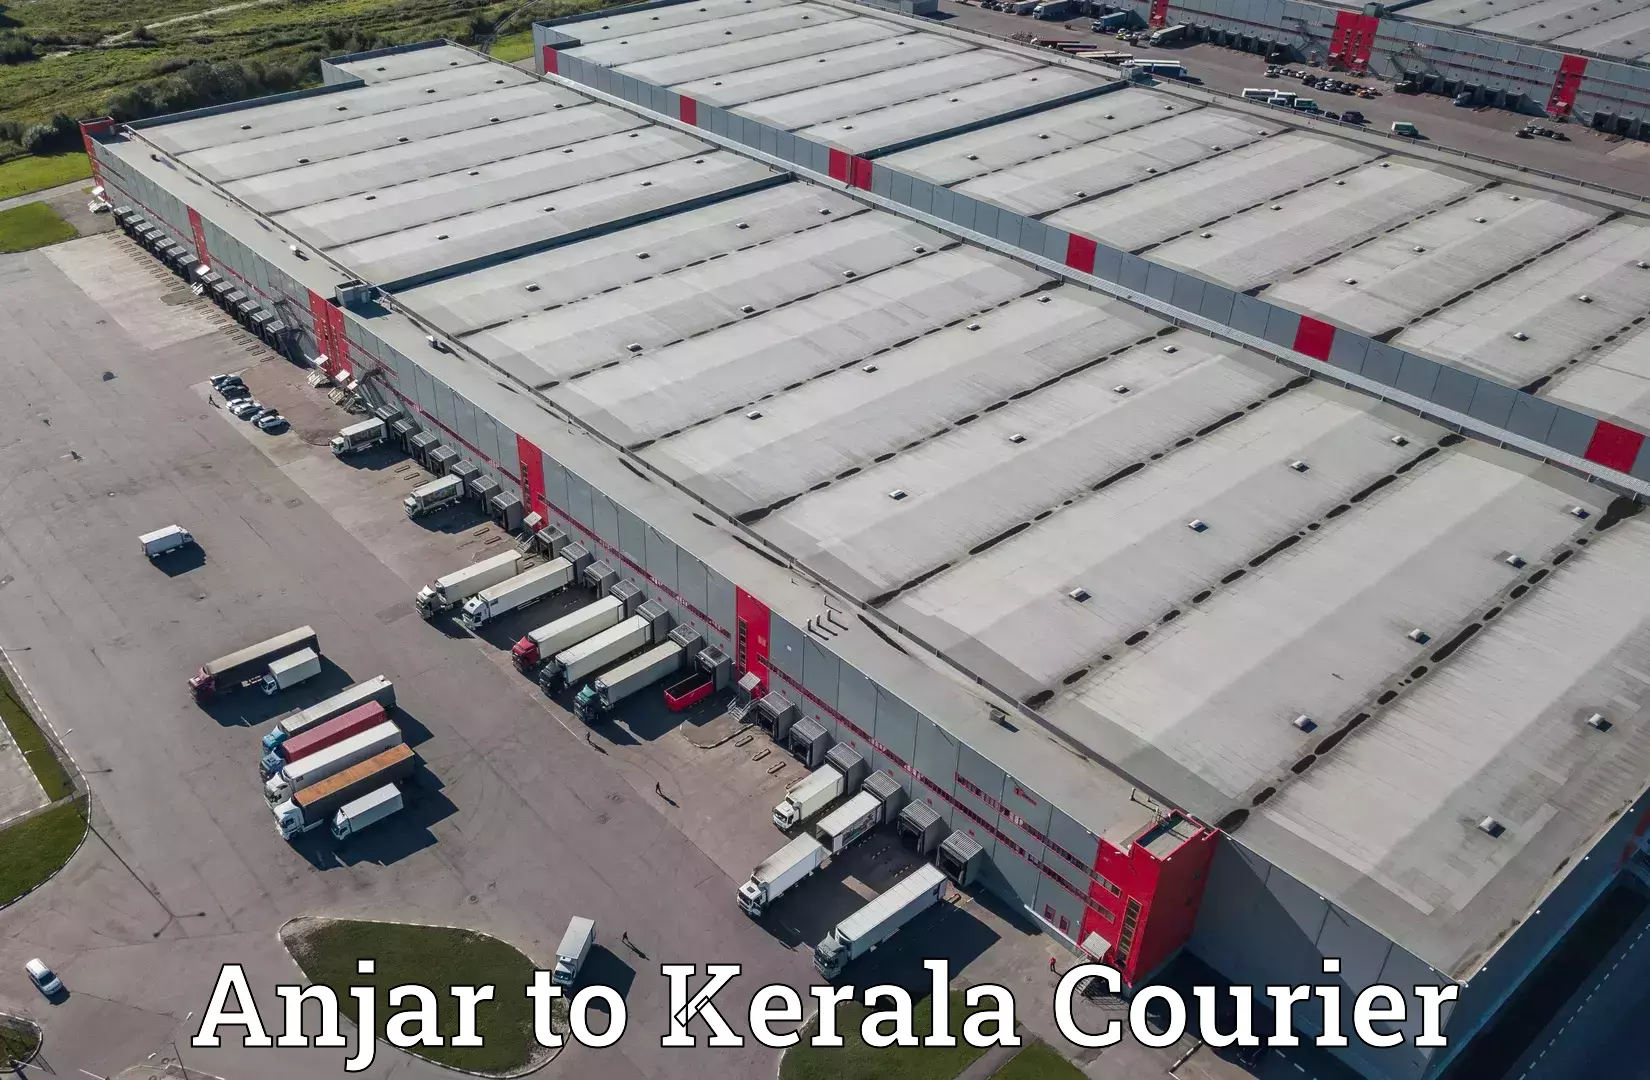 Digital courier platforms Anjar to Kerala